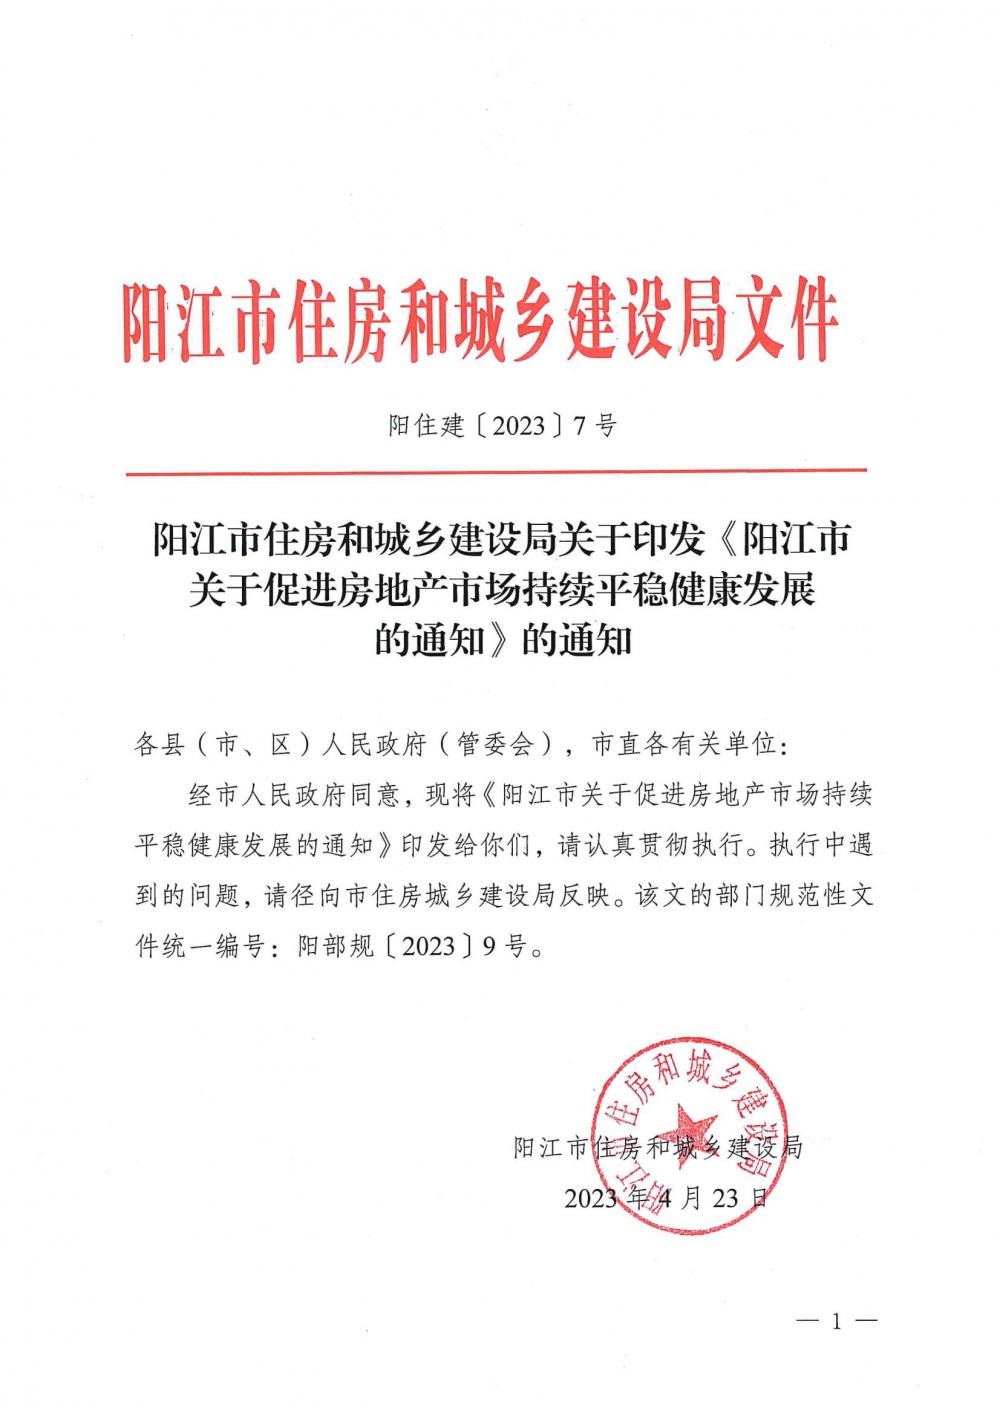 阳江市关于促进房地产市场持续平稳健康发展的通知_00.jpg